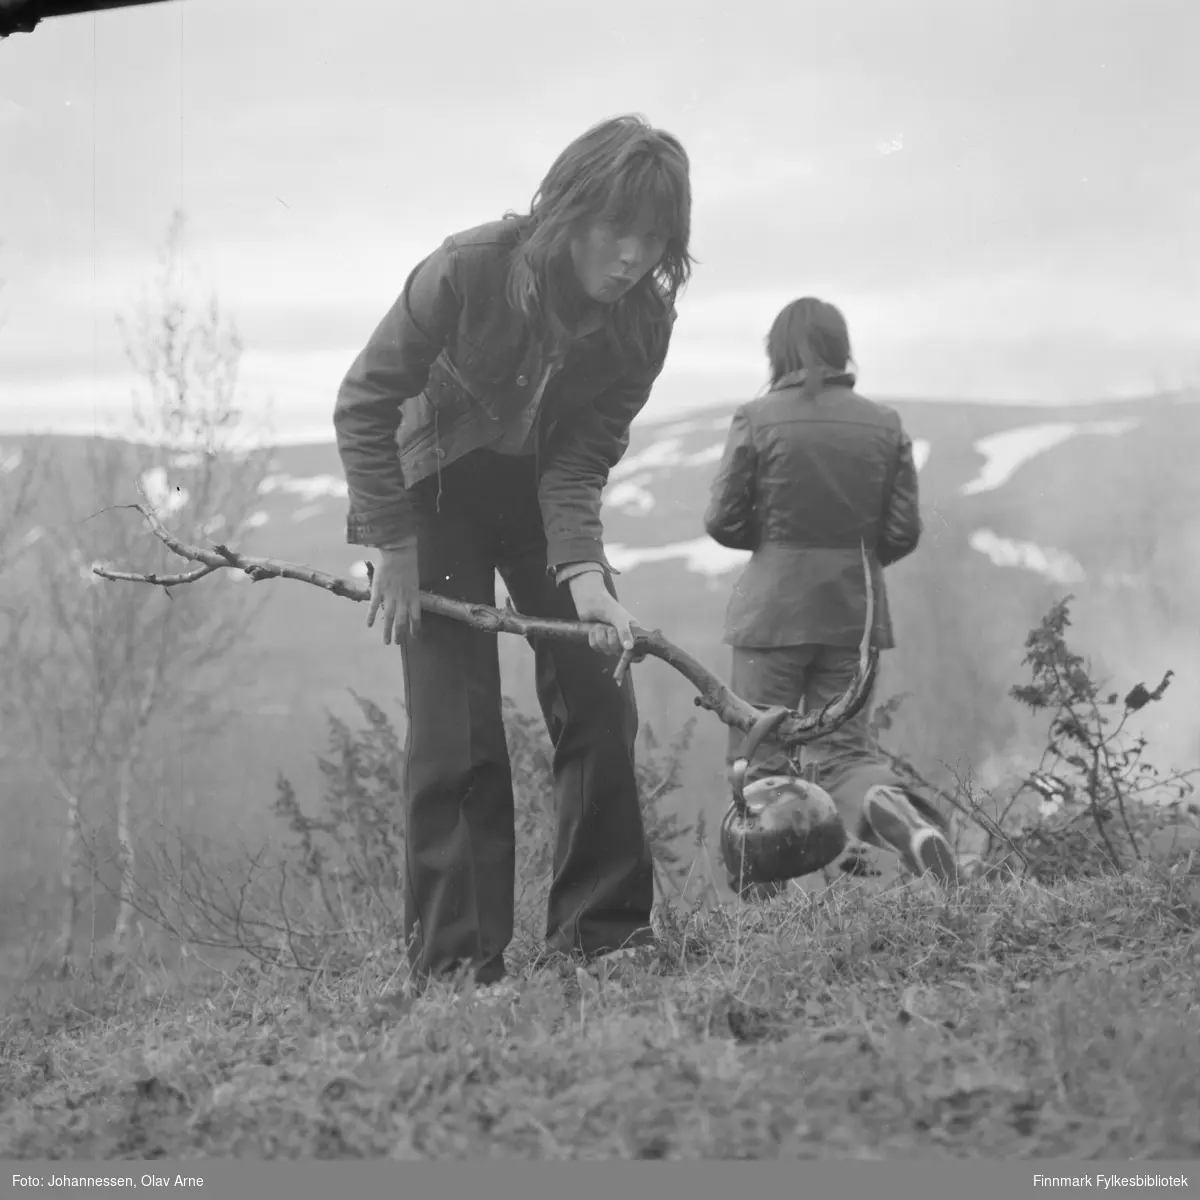 Ungdom på tur i Finnmark

Et av ungdommene ser mot kamera med en grimase og holder på en stor kvist med en kaffekjele hengende på. I bakgrunnen ser man en anne person i gummistøvler